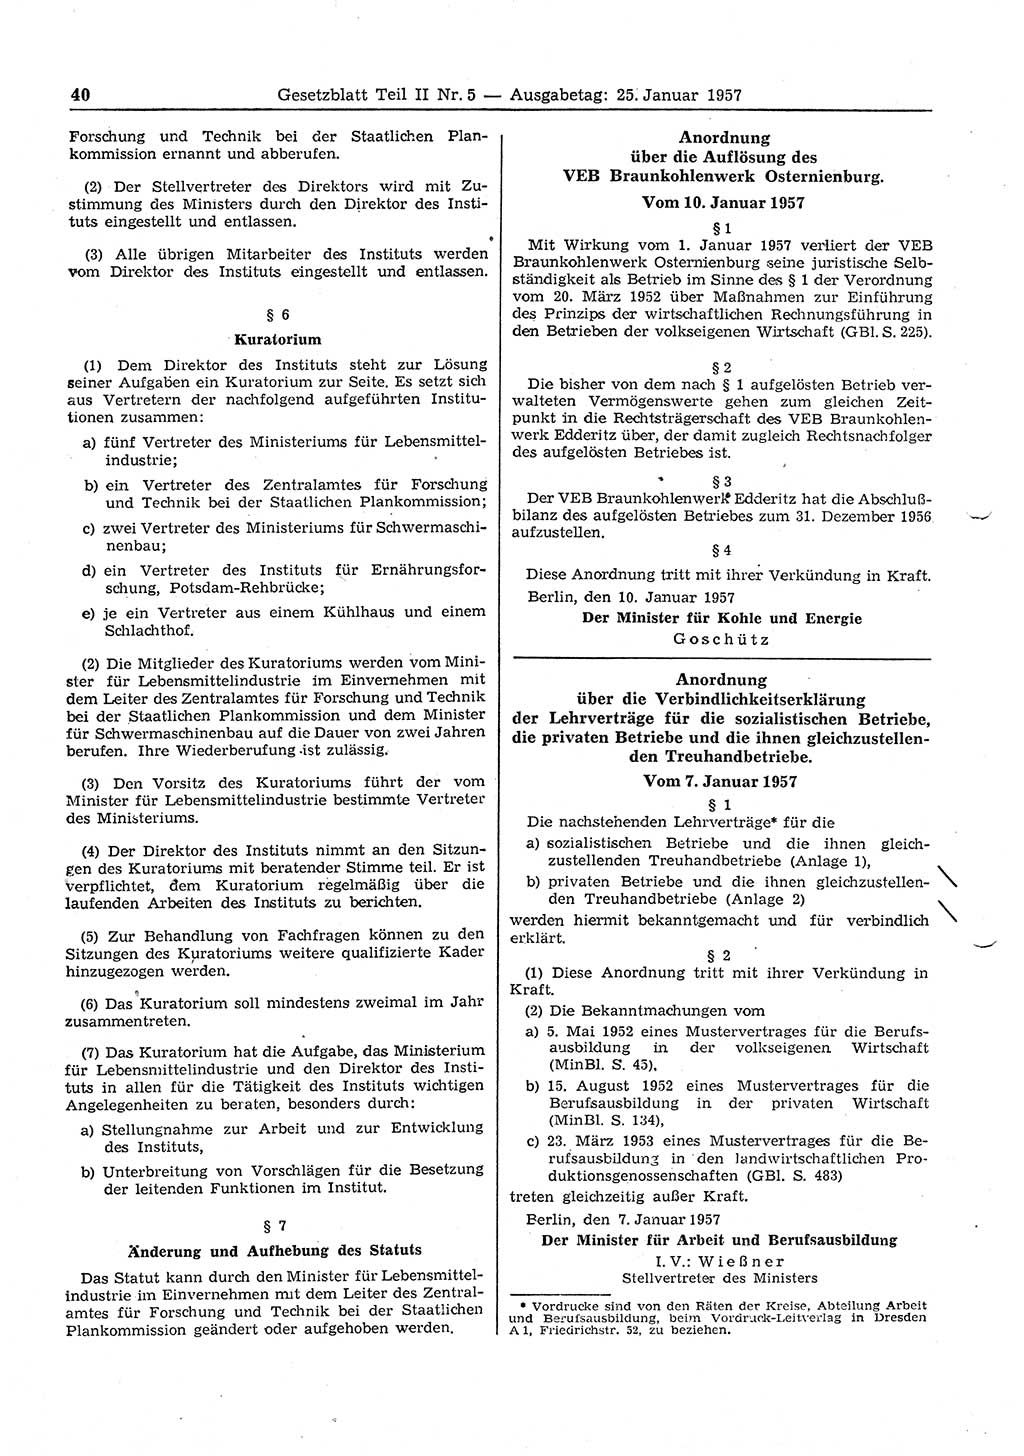 Gesetzblatt (GBl.) der Deutschen Demokratischen Republik (DDR) Teil ⅠⅠ 1957, Seite 40 (GBl. DDR ⅠⅠ 1957, S. 40)